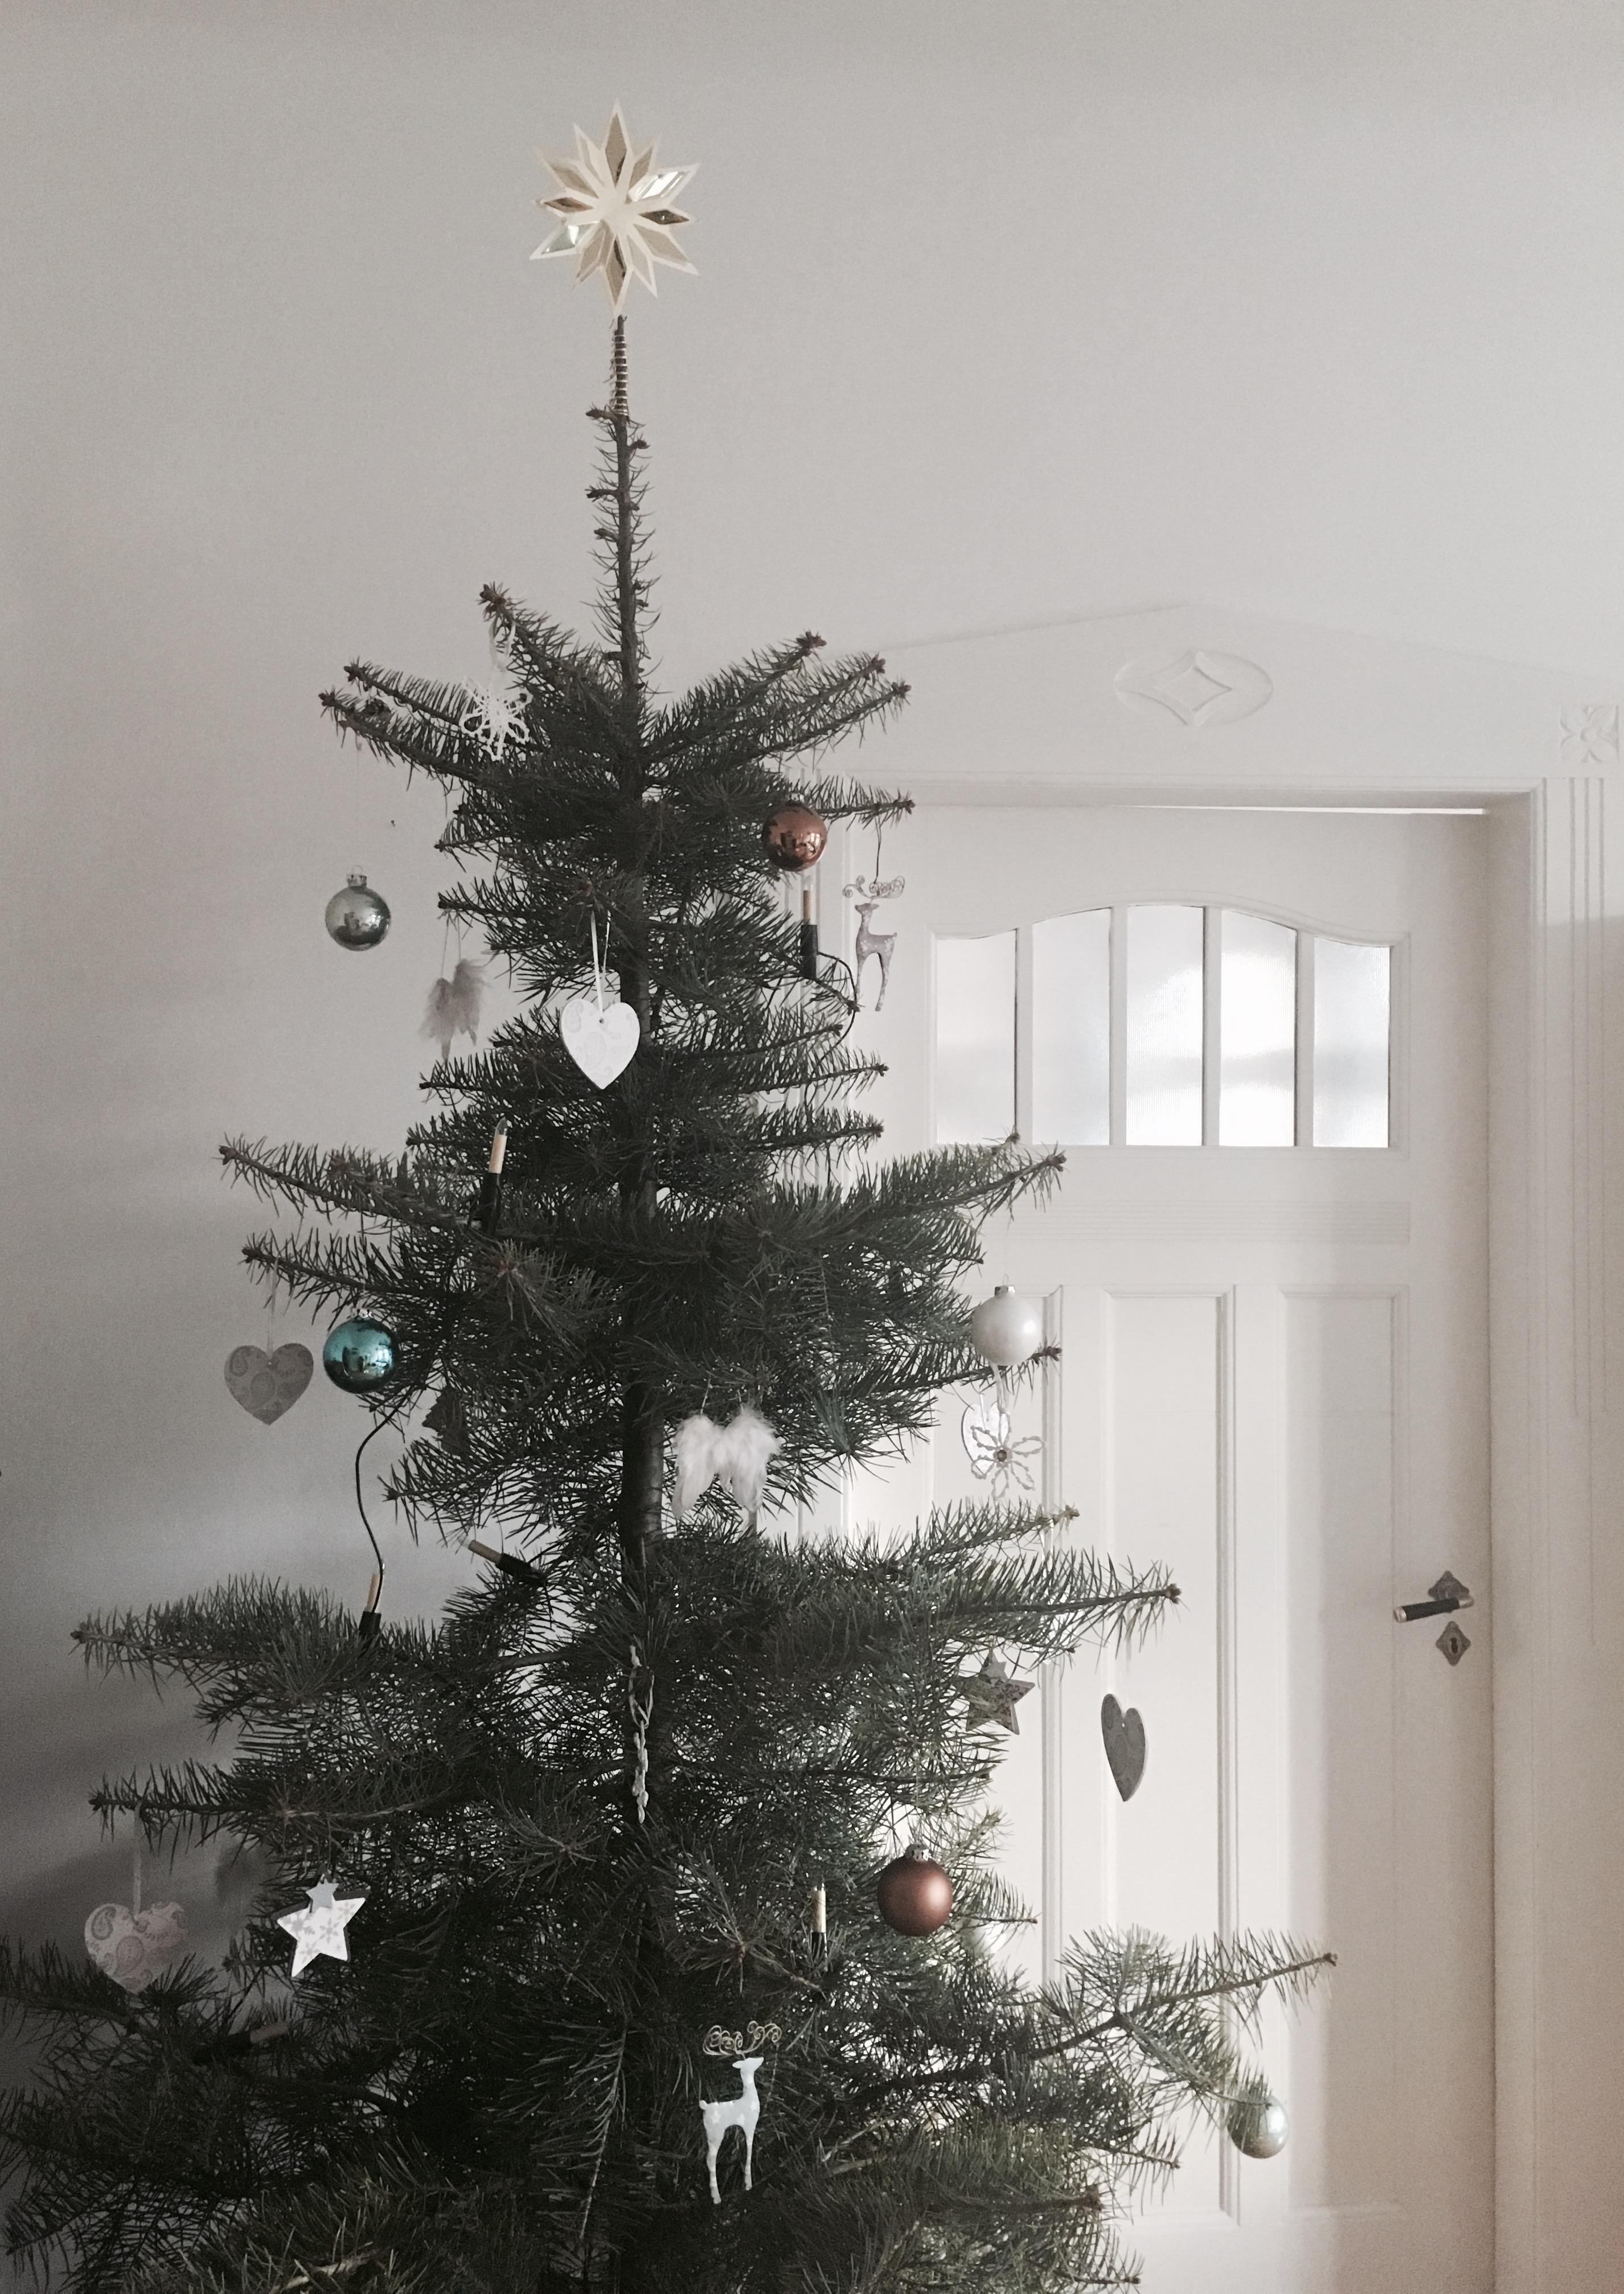 ChristmasTree... #weihnachten #weihnachtsbaum #stern #weihnachtsbaumkugeln #weihnachtsbaumschmuck #coloradotanne 